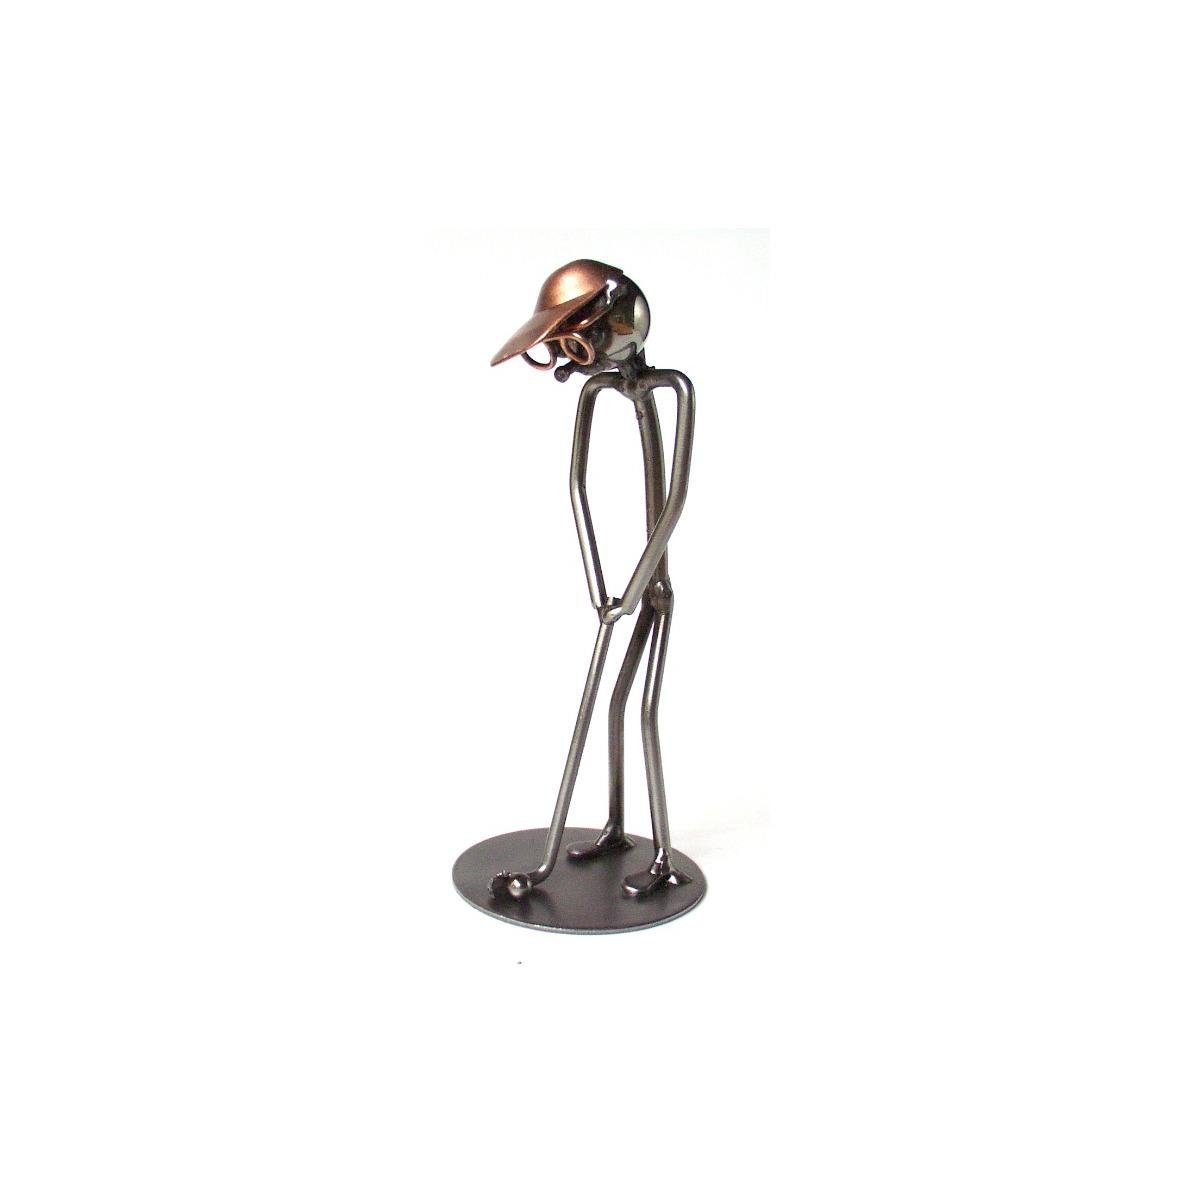 Hinz & Kunst Dekofigur 8283 - wired Putter" "Golf Figur line